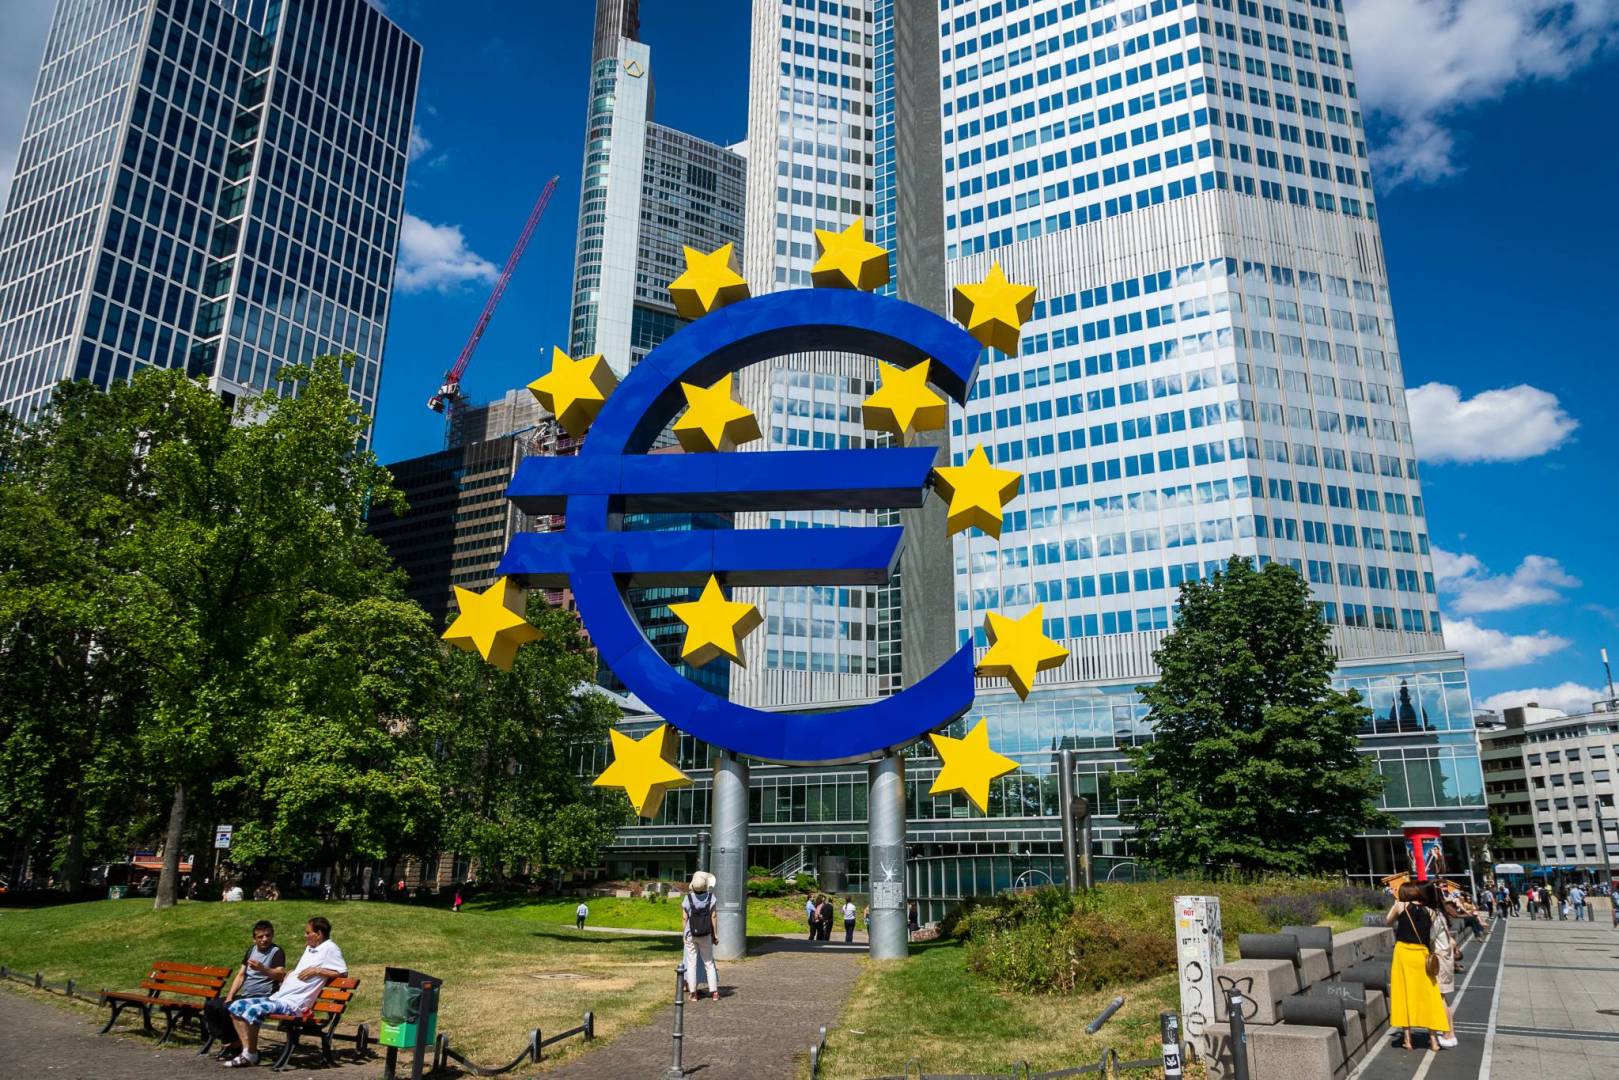 البنك المركزي الأوروبي: أسعار الفائدة المنخفضة قد تؤثر على الاستقرار المالي  في منطقة اليورو | صحيفة الاقتصادية